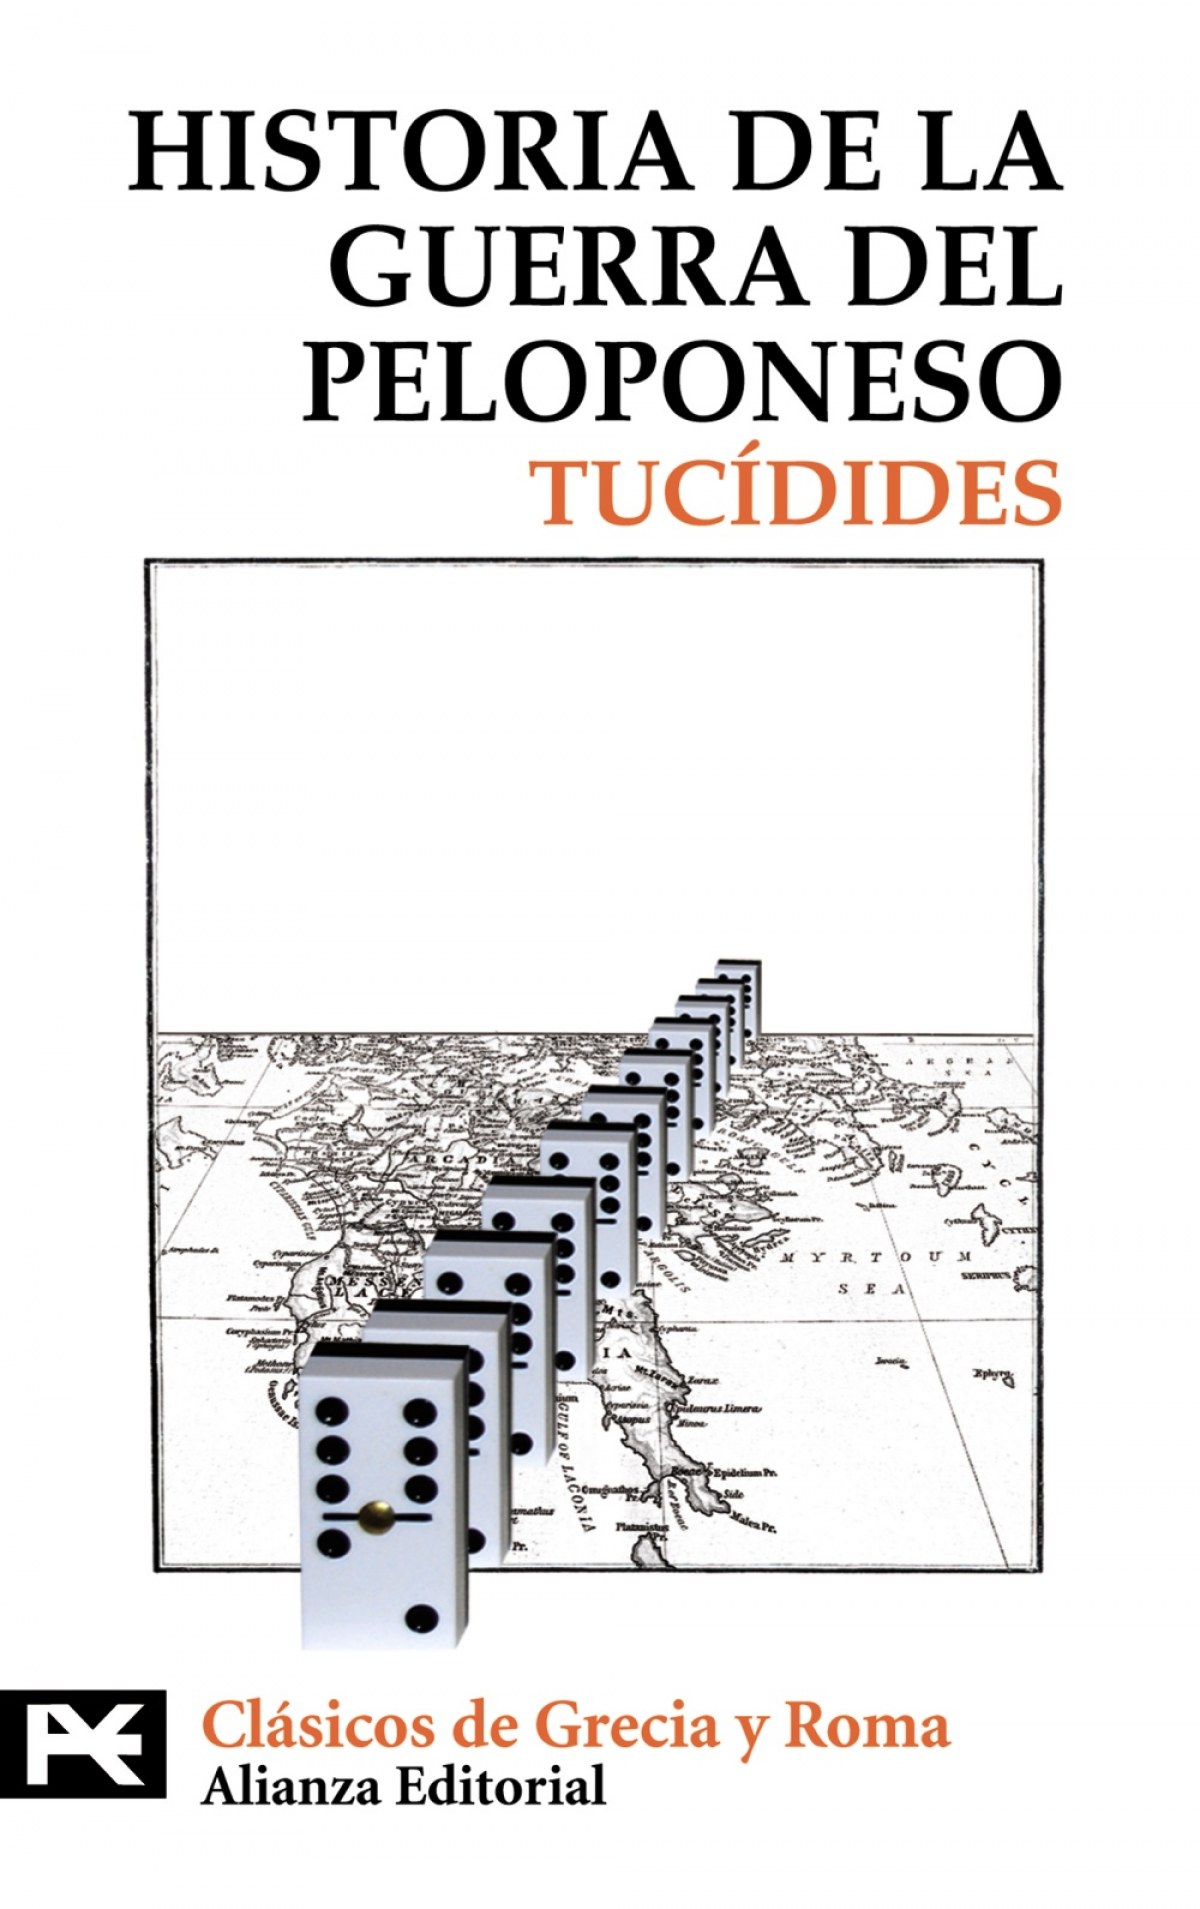 Historia de la guerra del Peloponeso - Tucídides, Tucídides